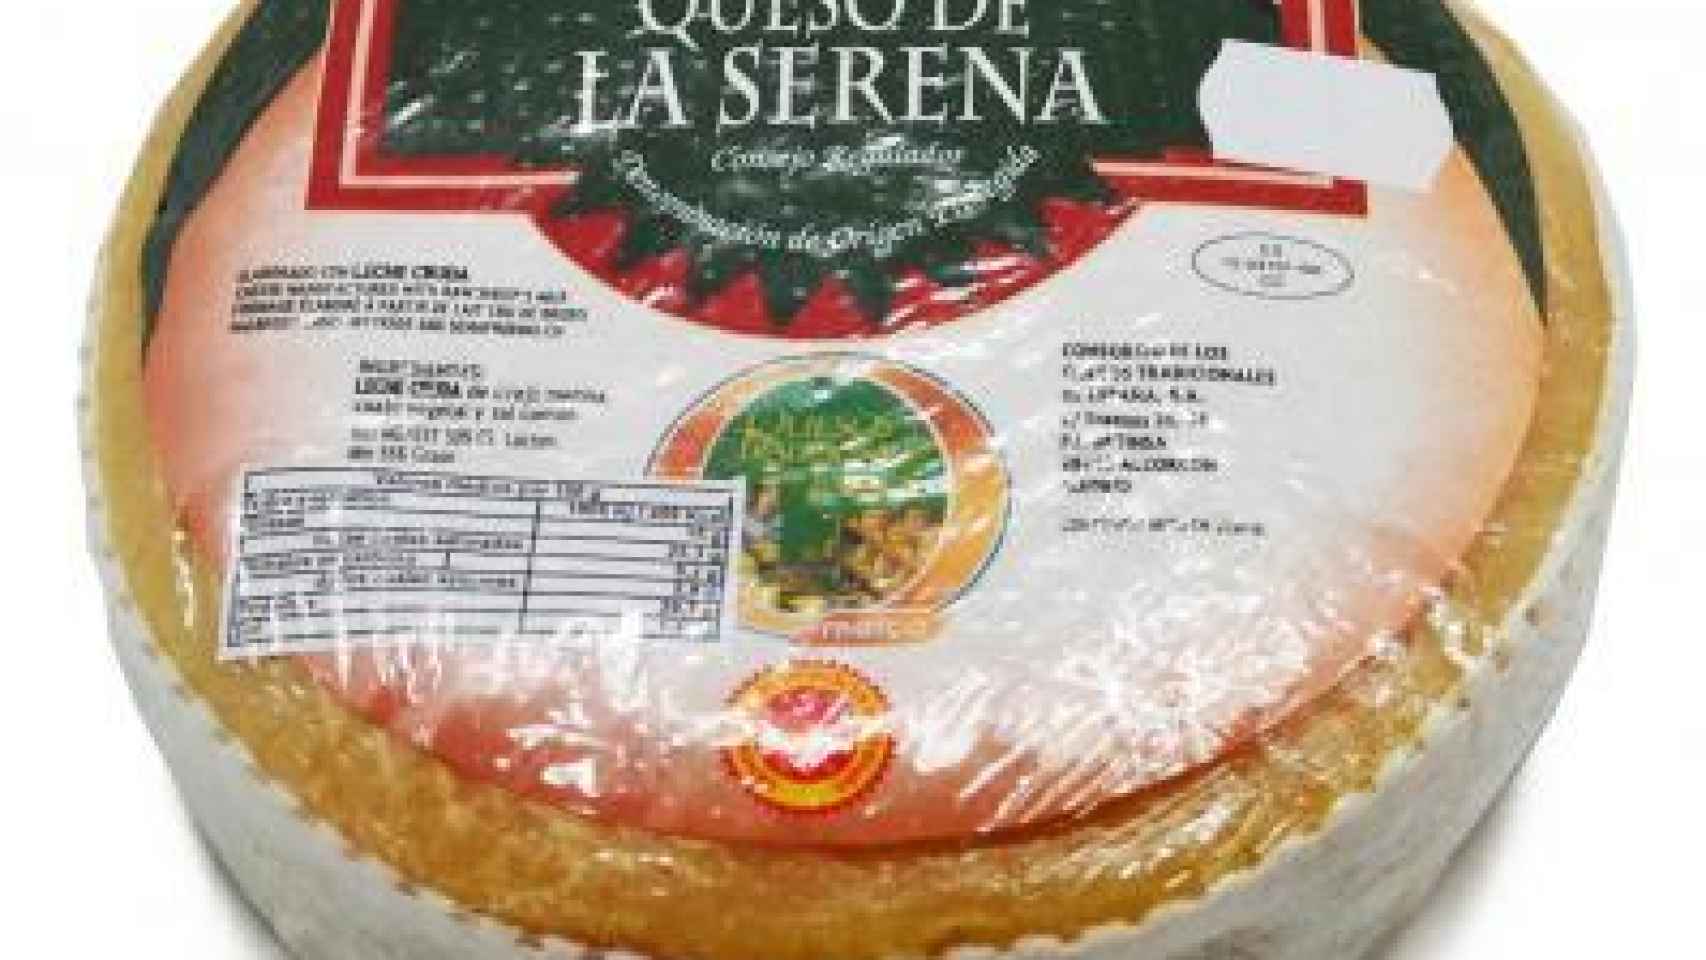 Uno de los quesos con D.O. de La Serena.